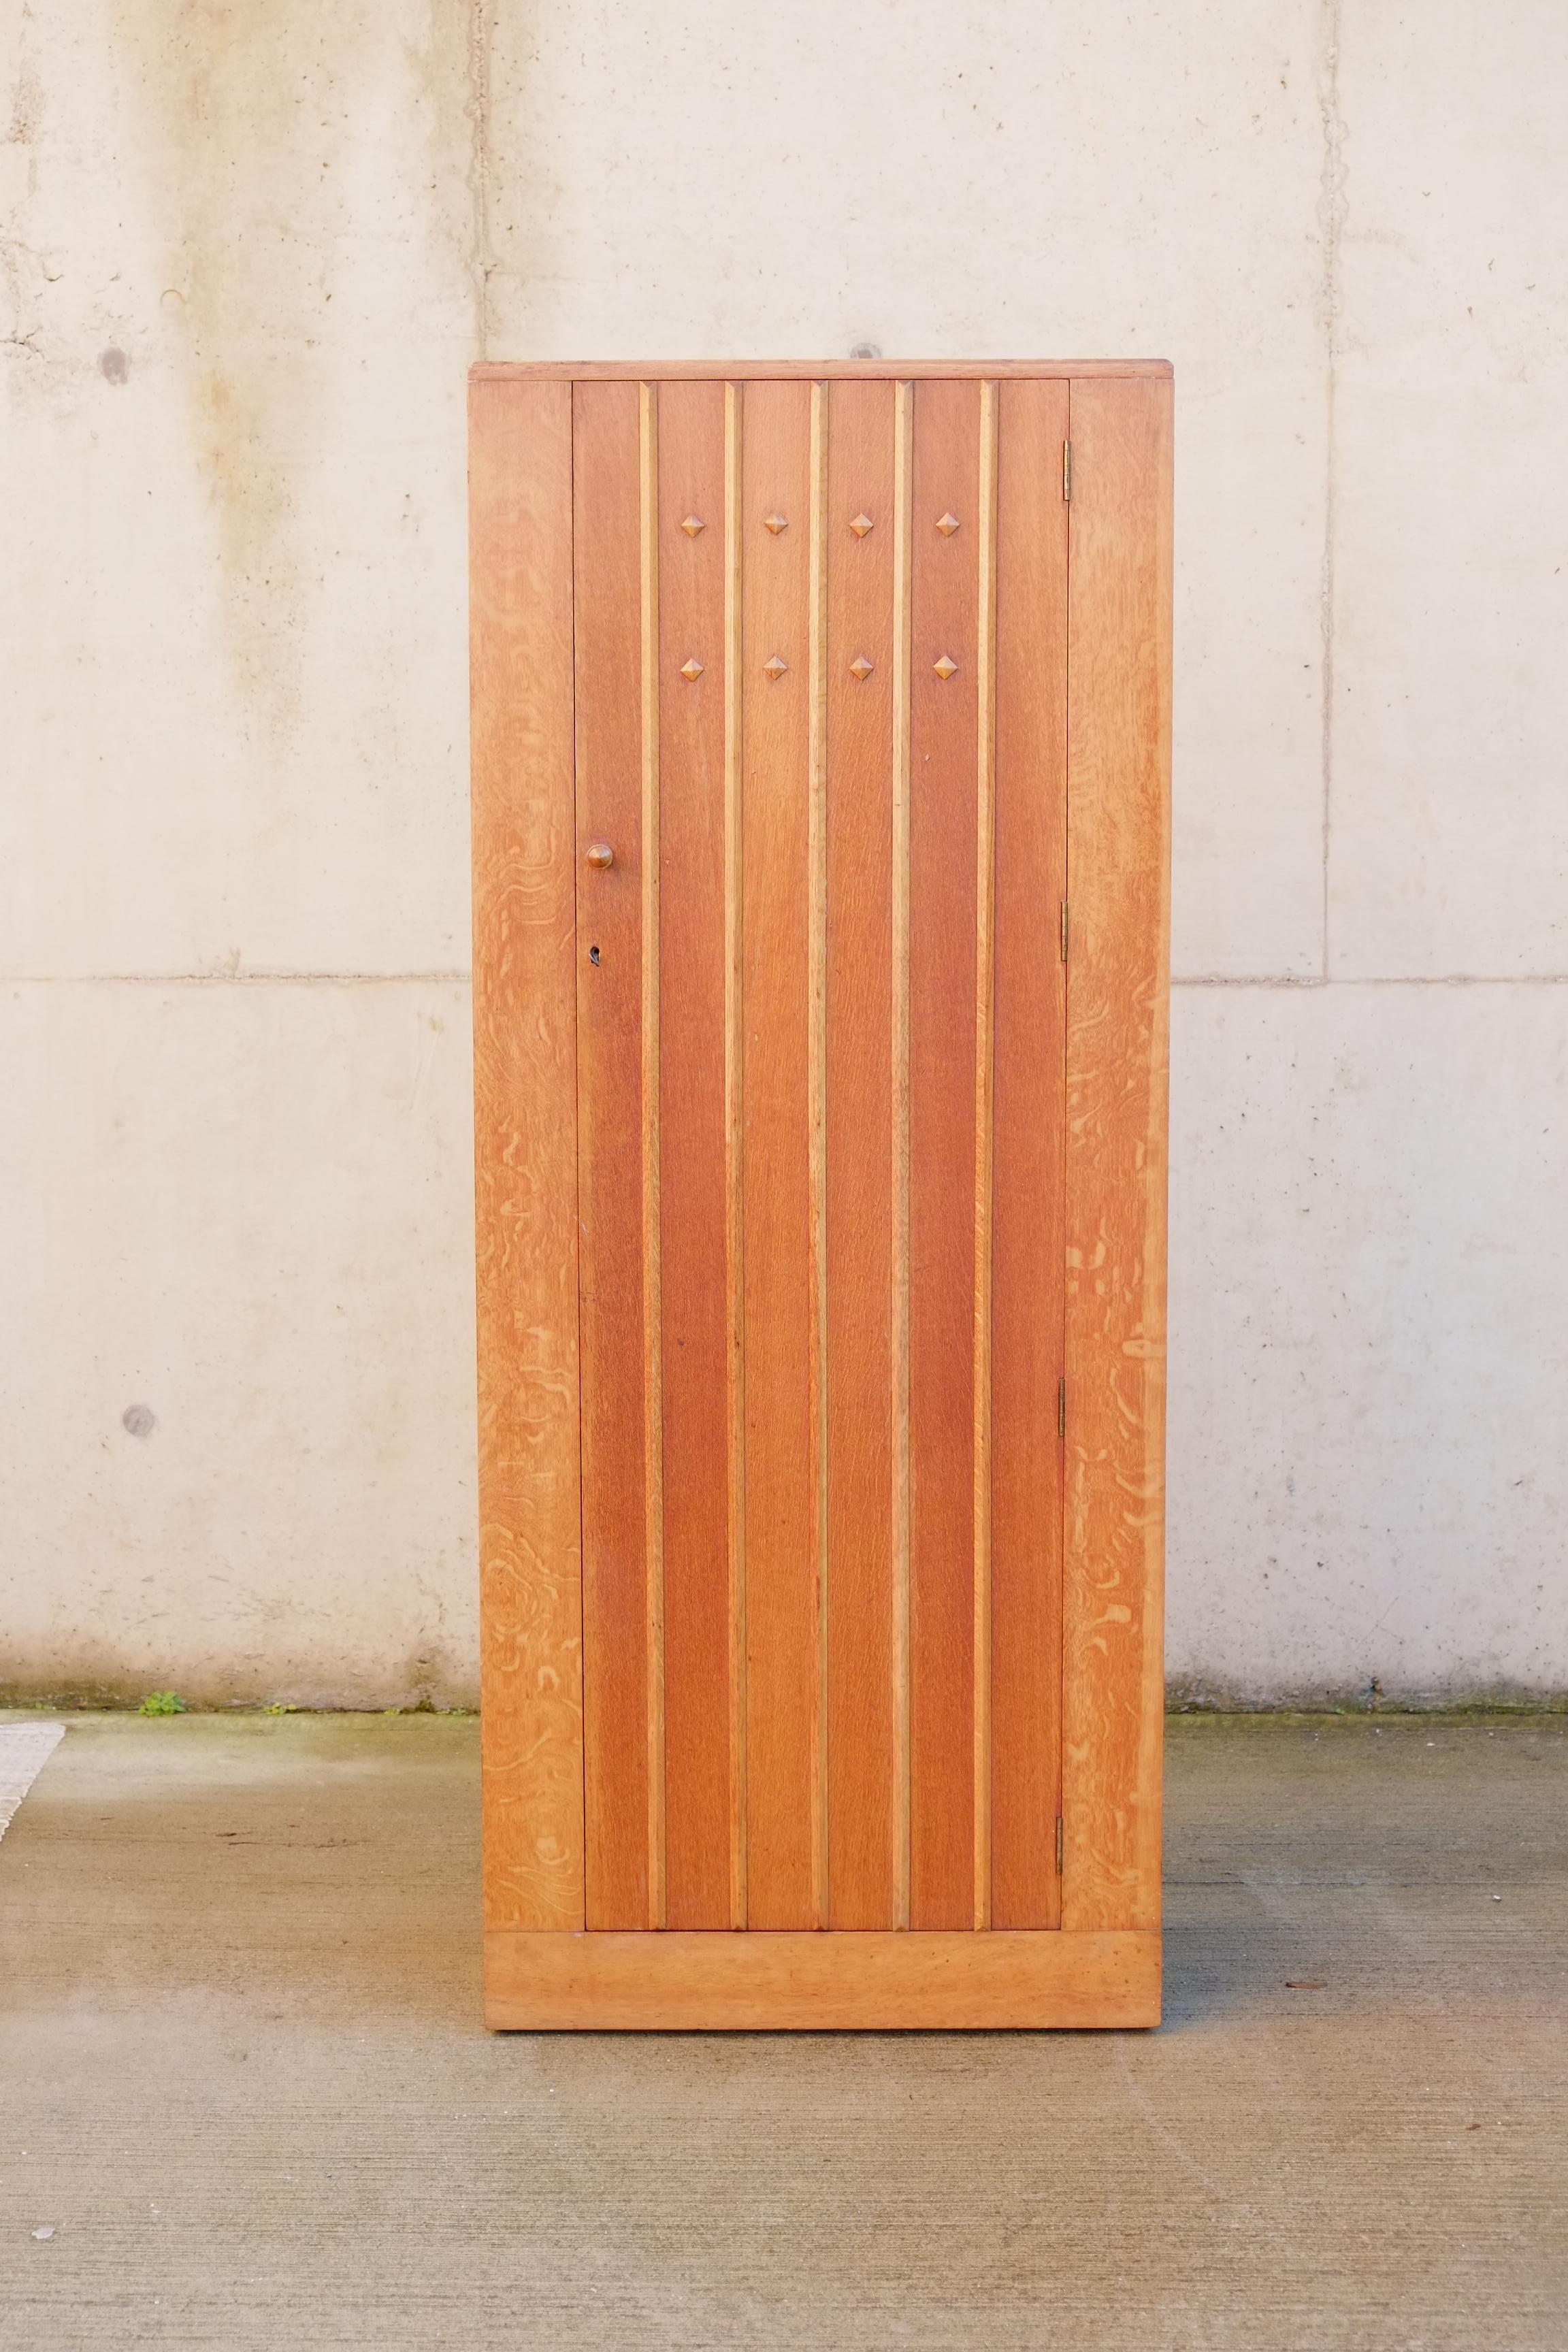 Une élégante armoire haute et étroite, fabriquée en Angleterre vers 1940. L'armoire est composée d'un lambris en chêne clair avec un magnifique panneau et des détails en forme de diamant sur la façade de la porte. A l'intérieur, il y a une seule